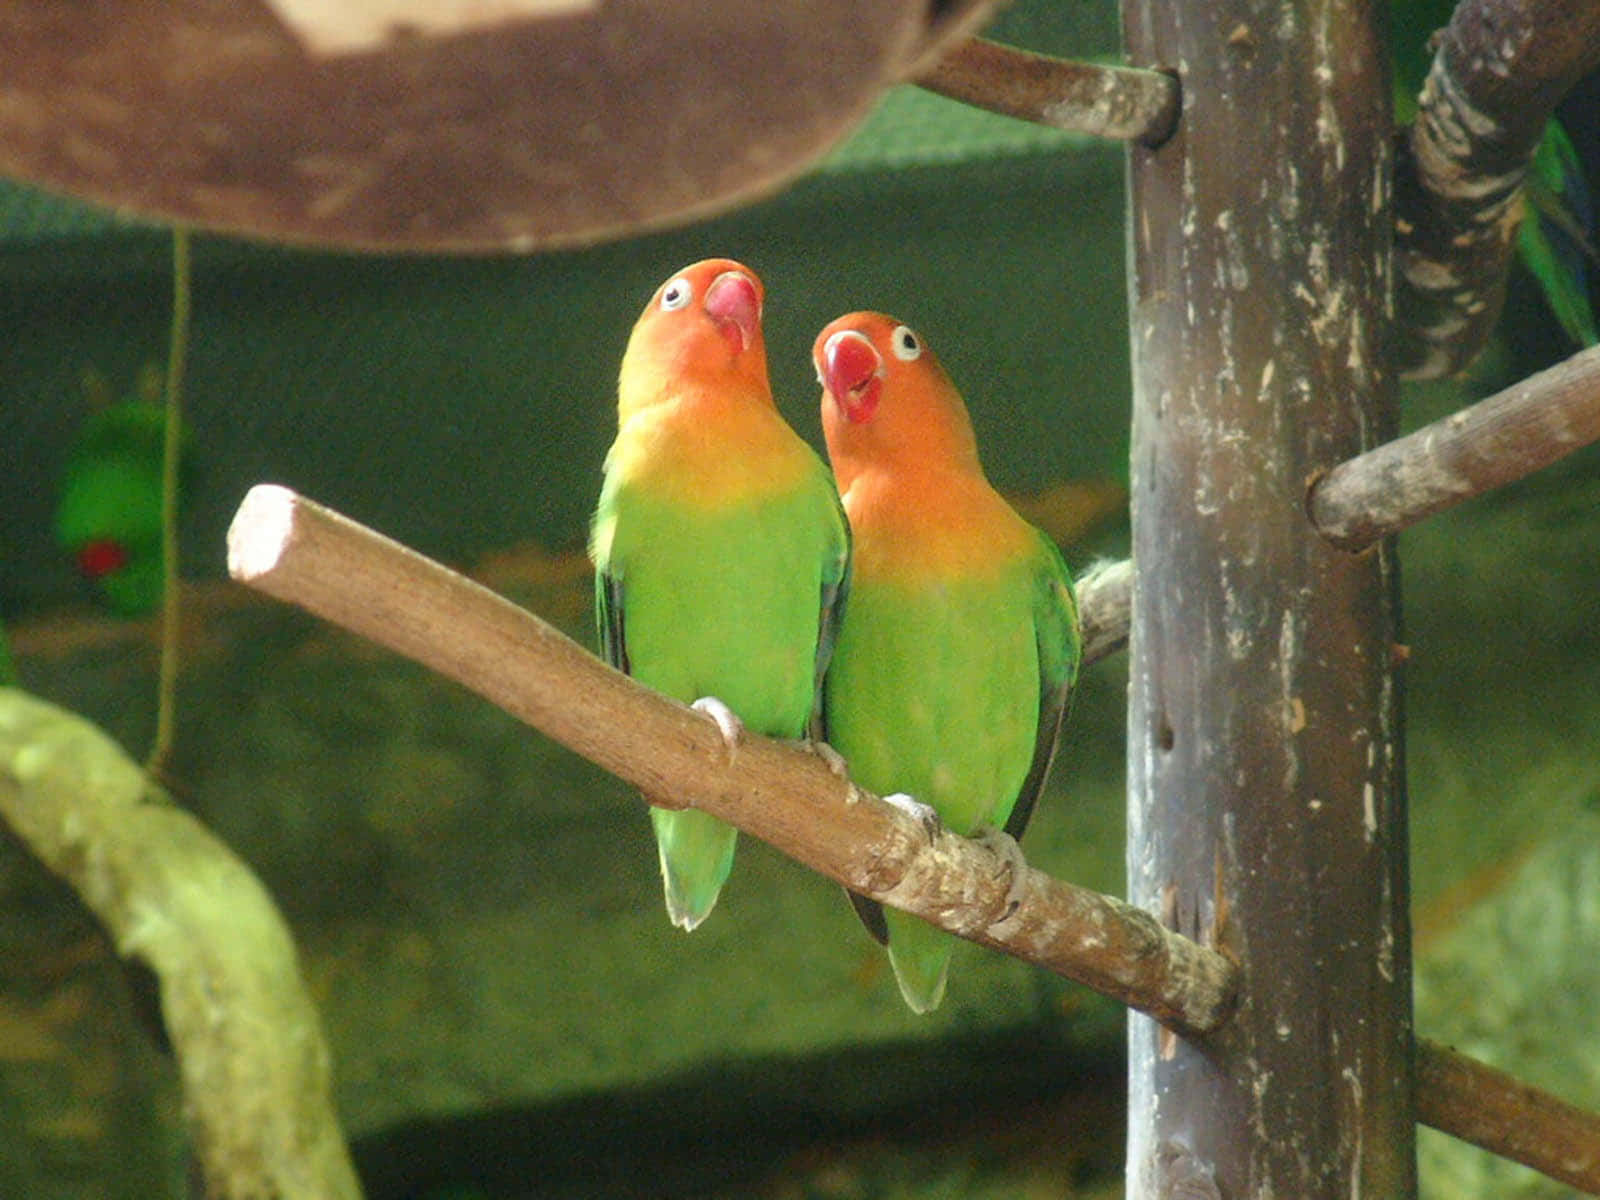 Liebesvögelverbringen Gemeinsam Schöne Zeit Miteinander.